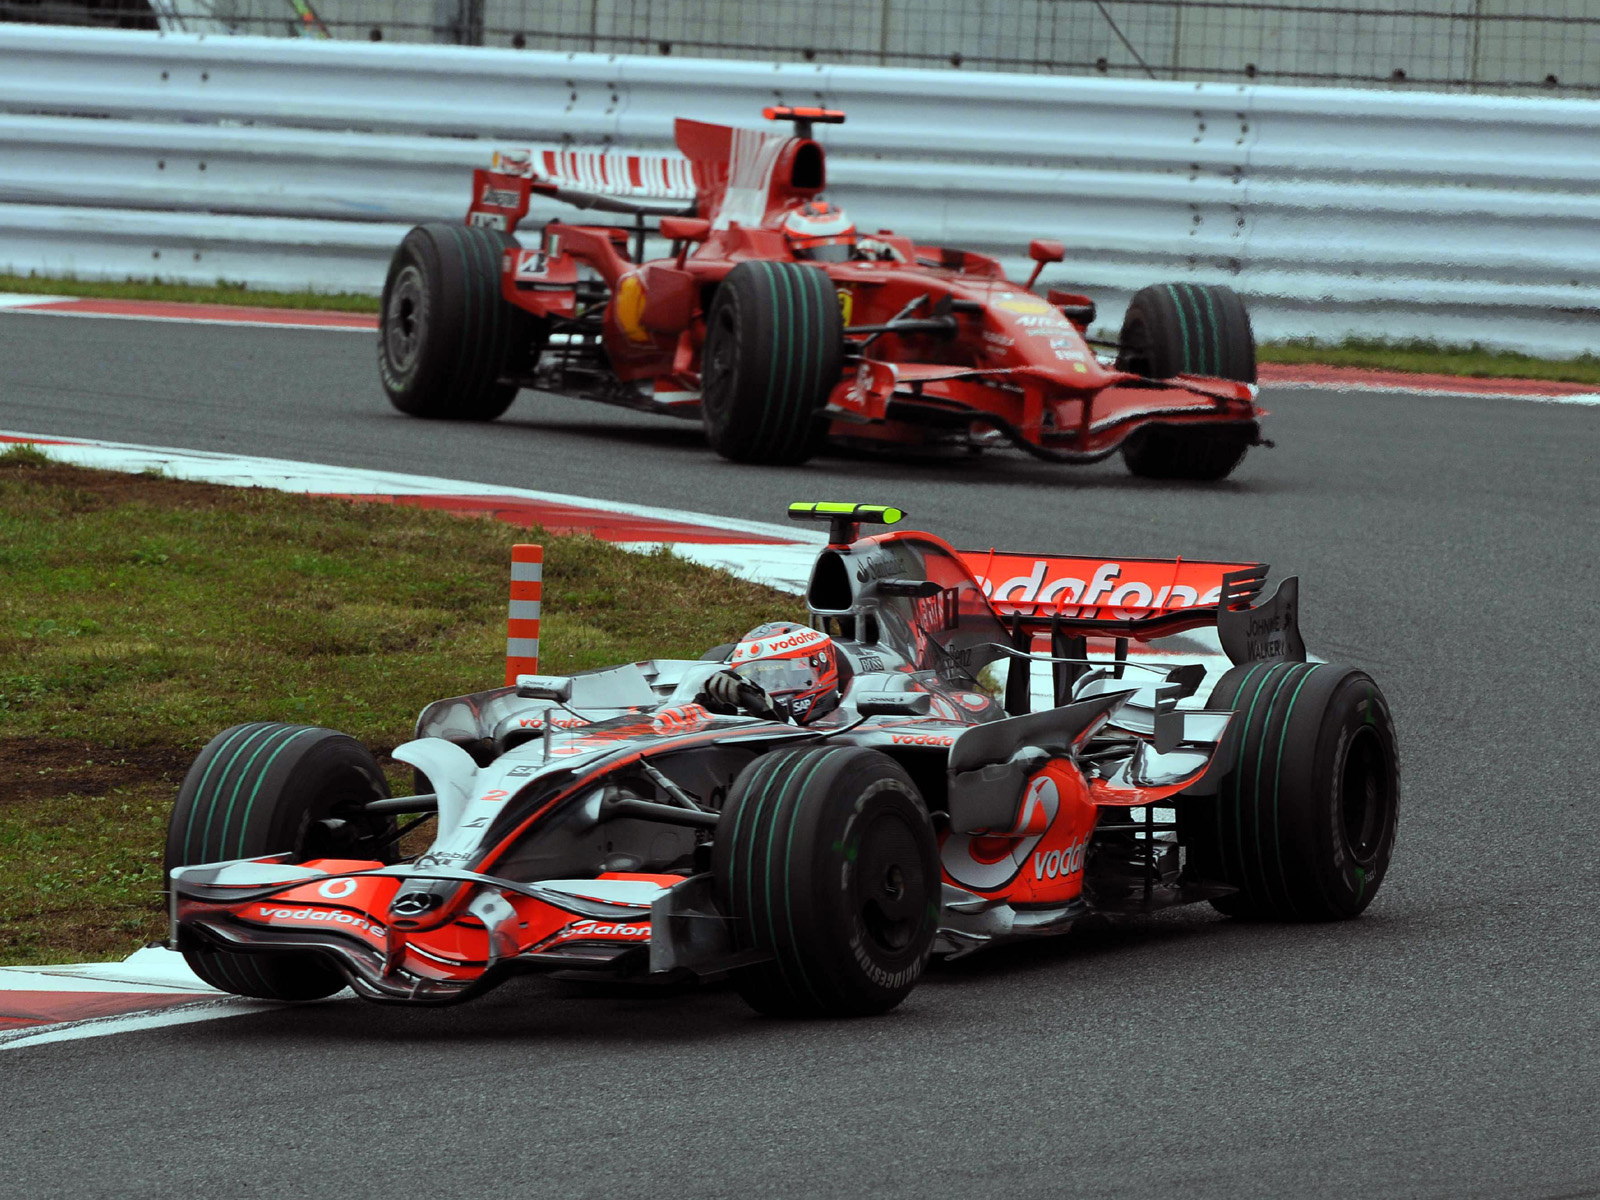 Fotos E Imagens De Carros De Fórmula - Ferrari Mclaren F1 2008 - HD Wallpaper 